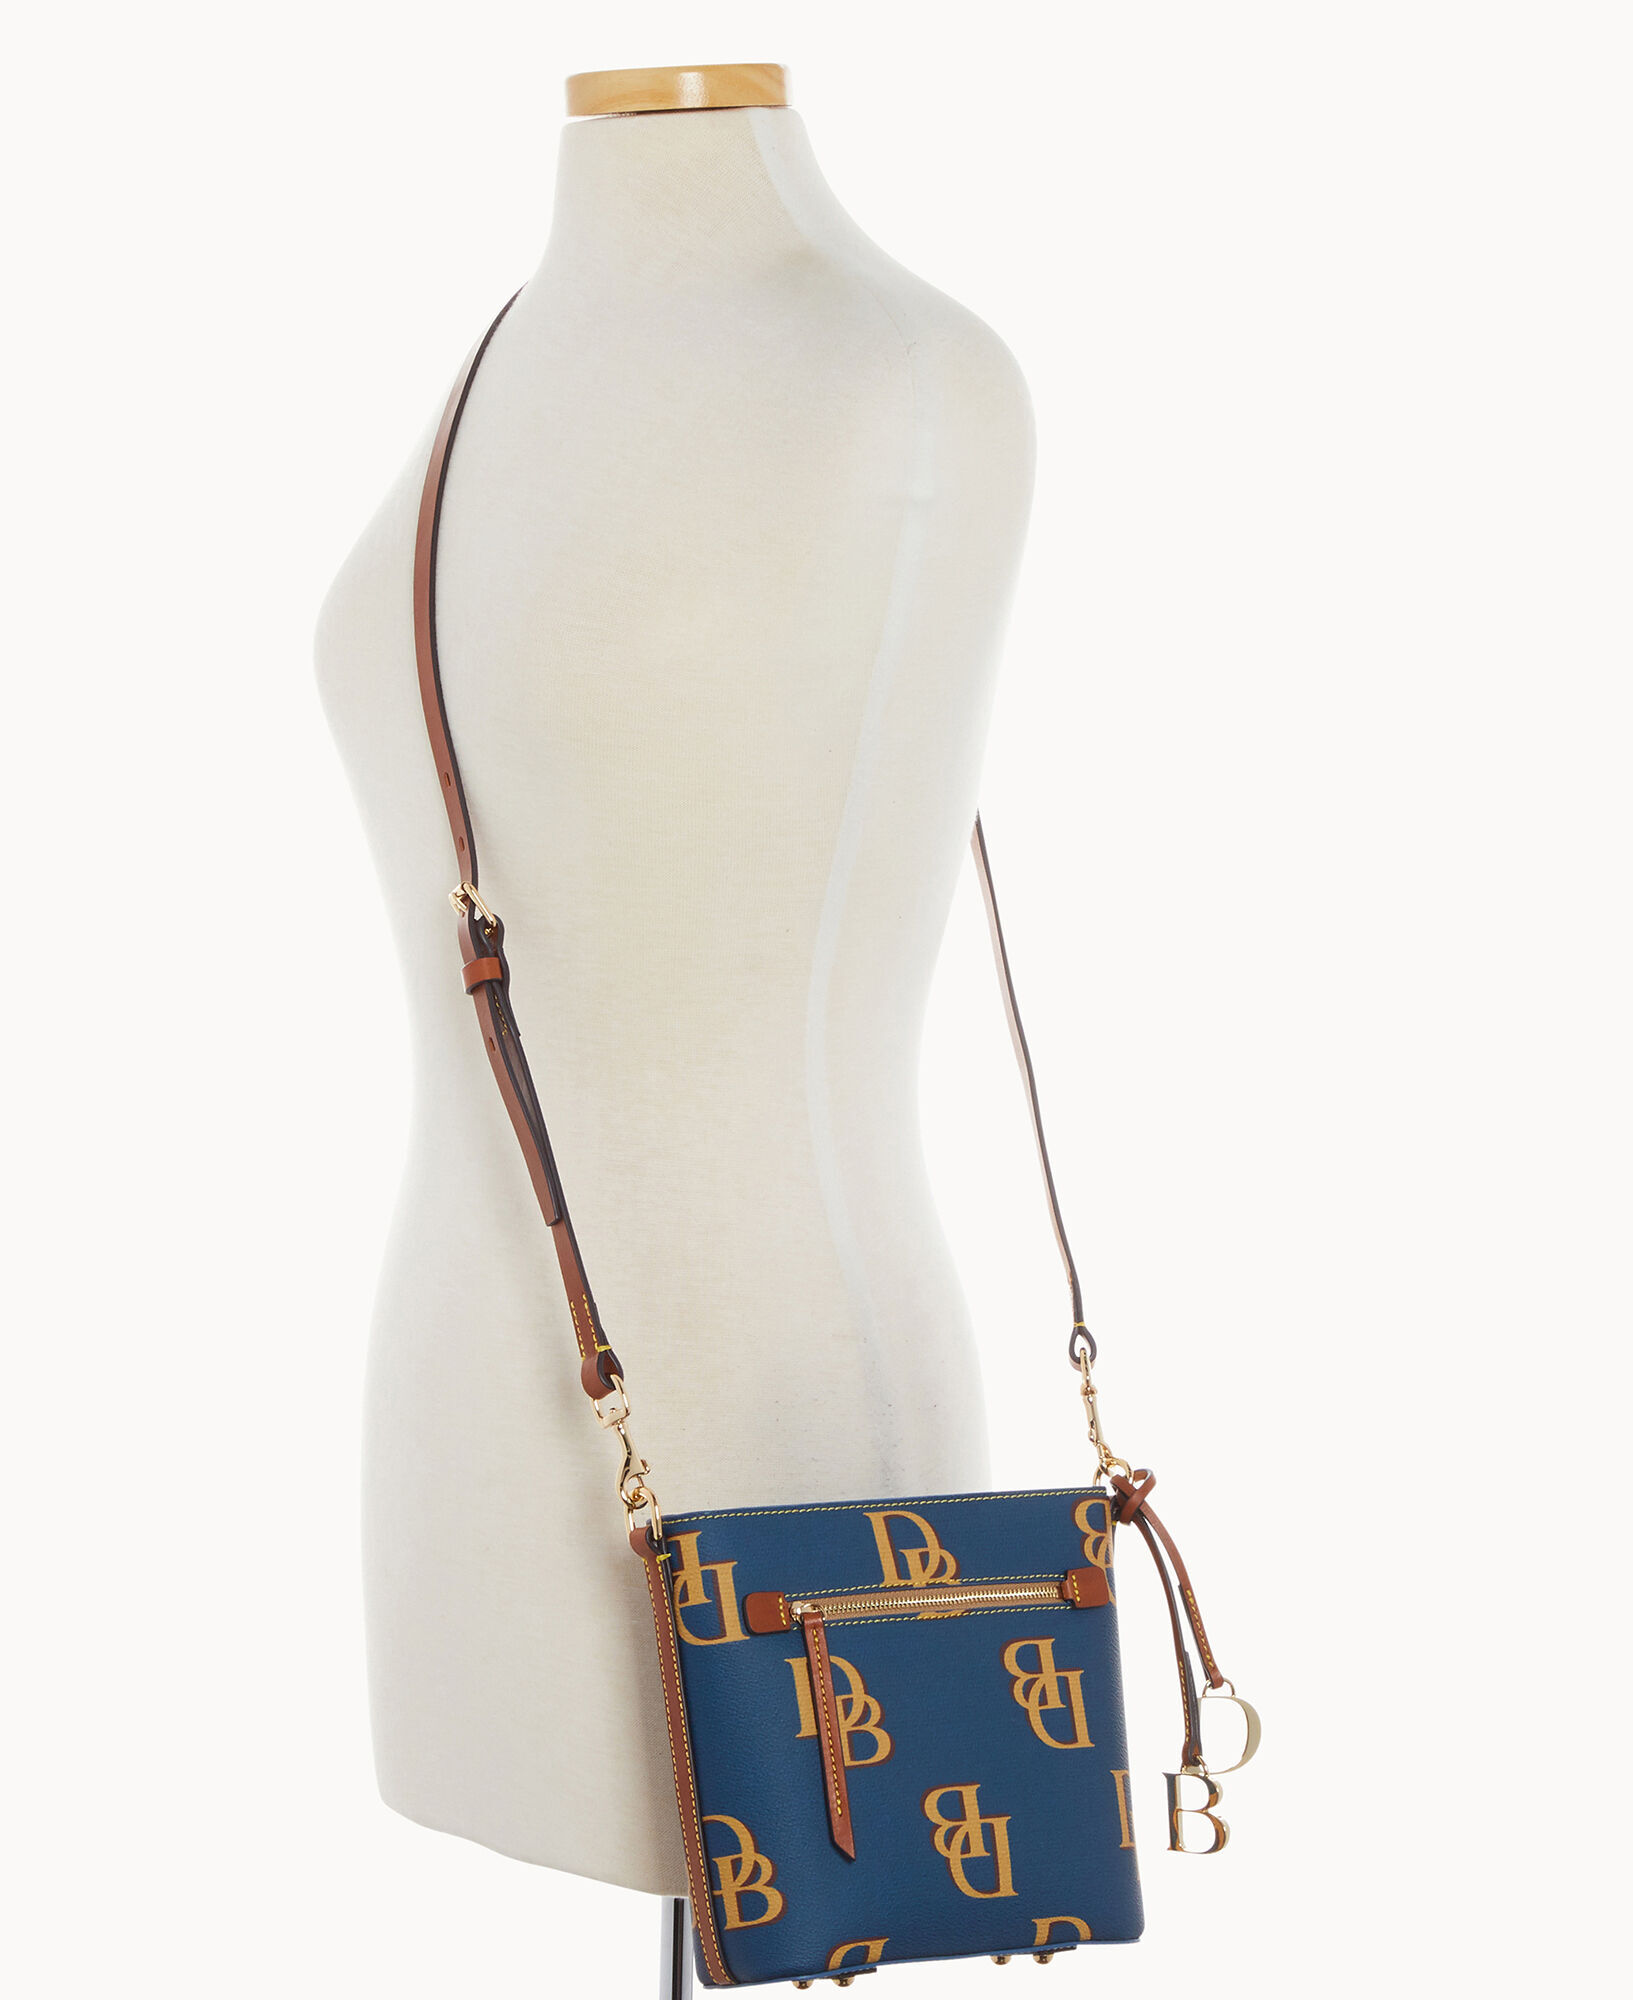 Dooney & Bourke Saffiano Small Zip Crossbody Bag